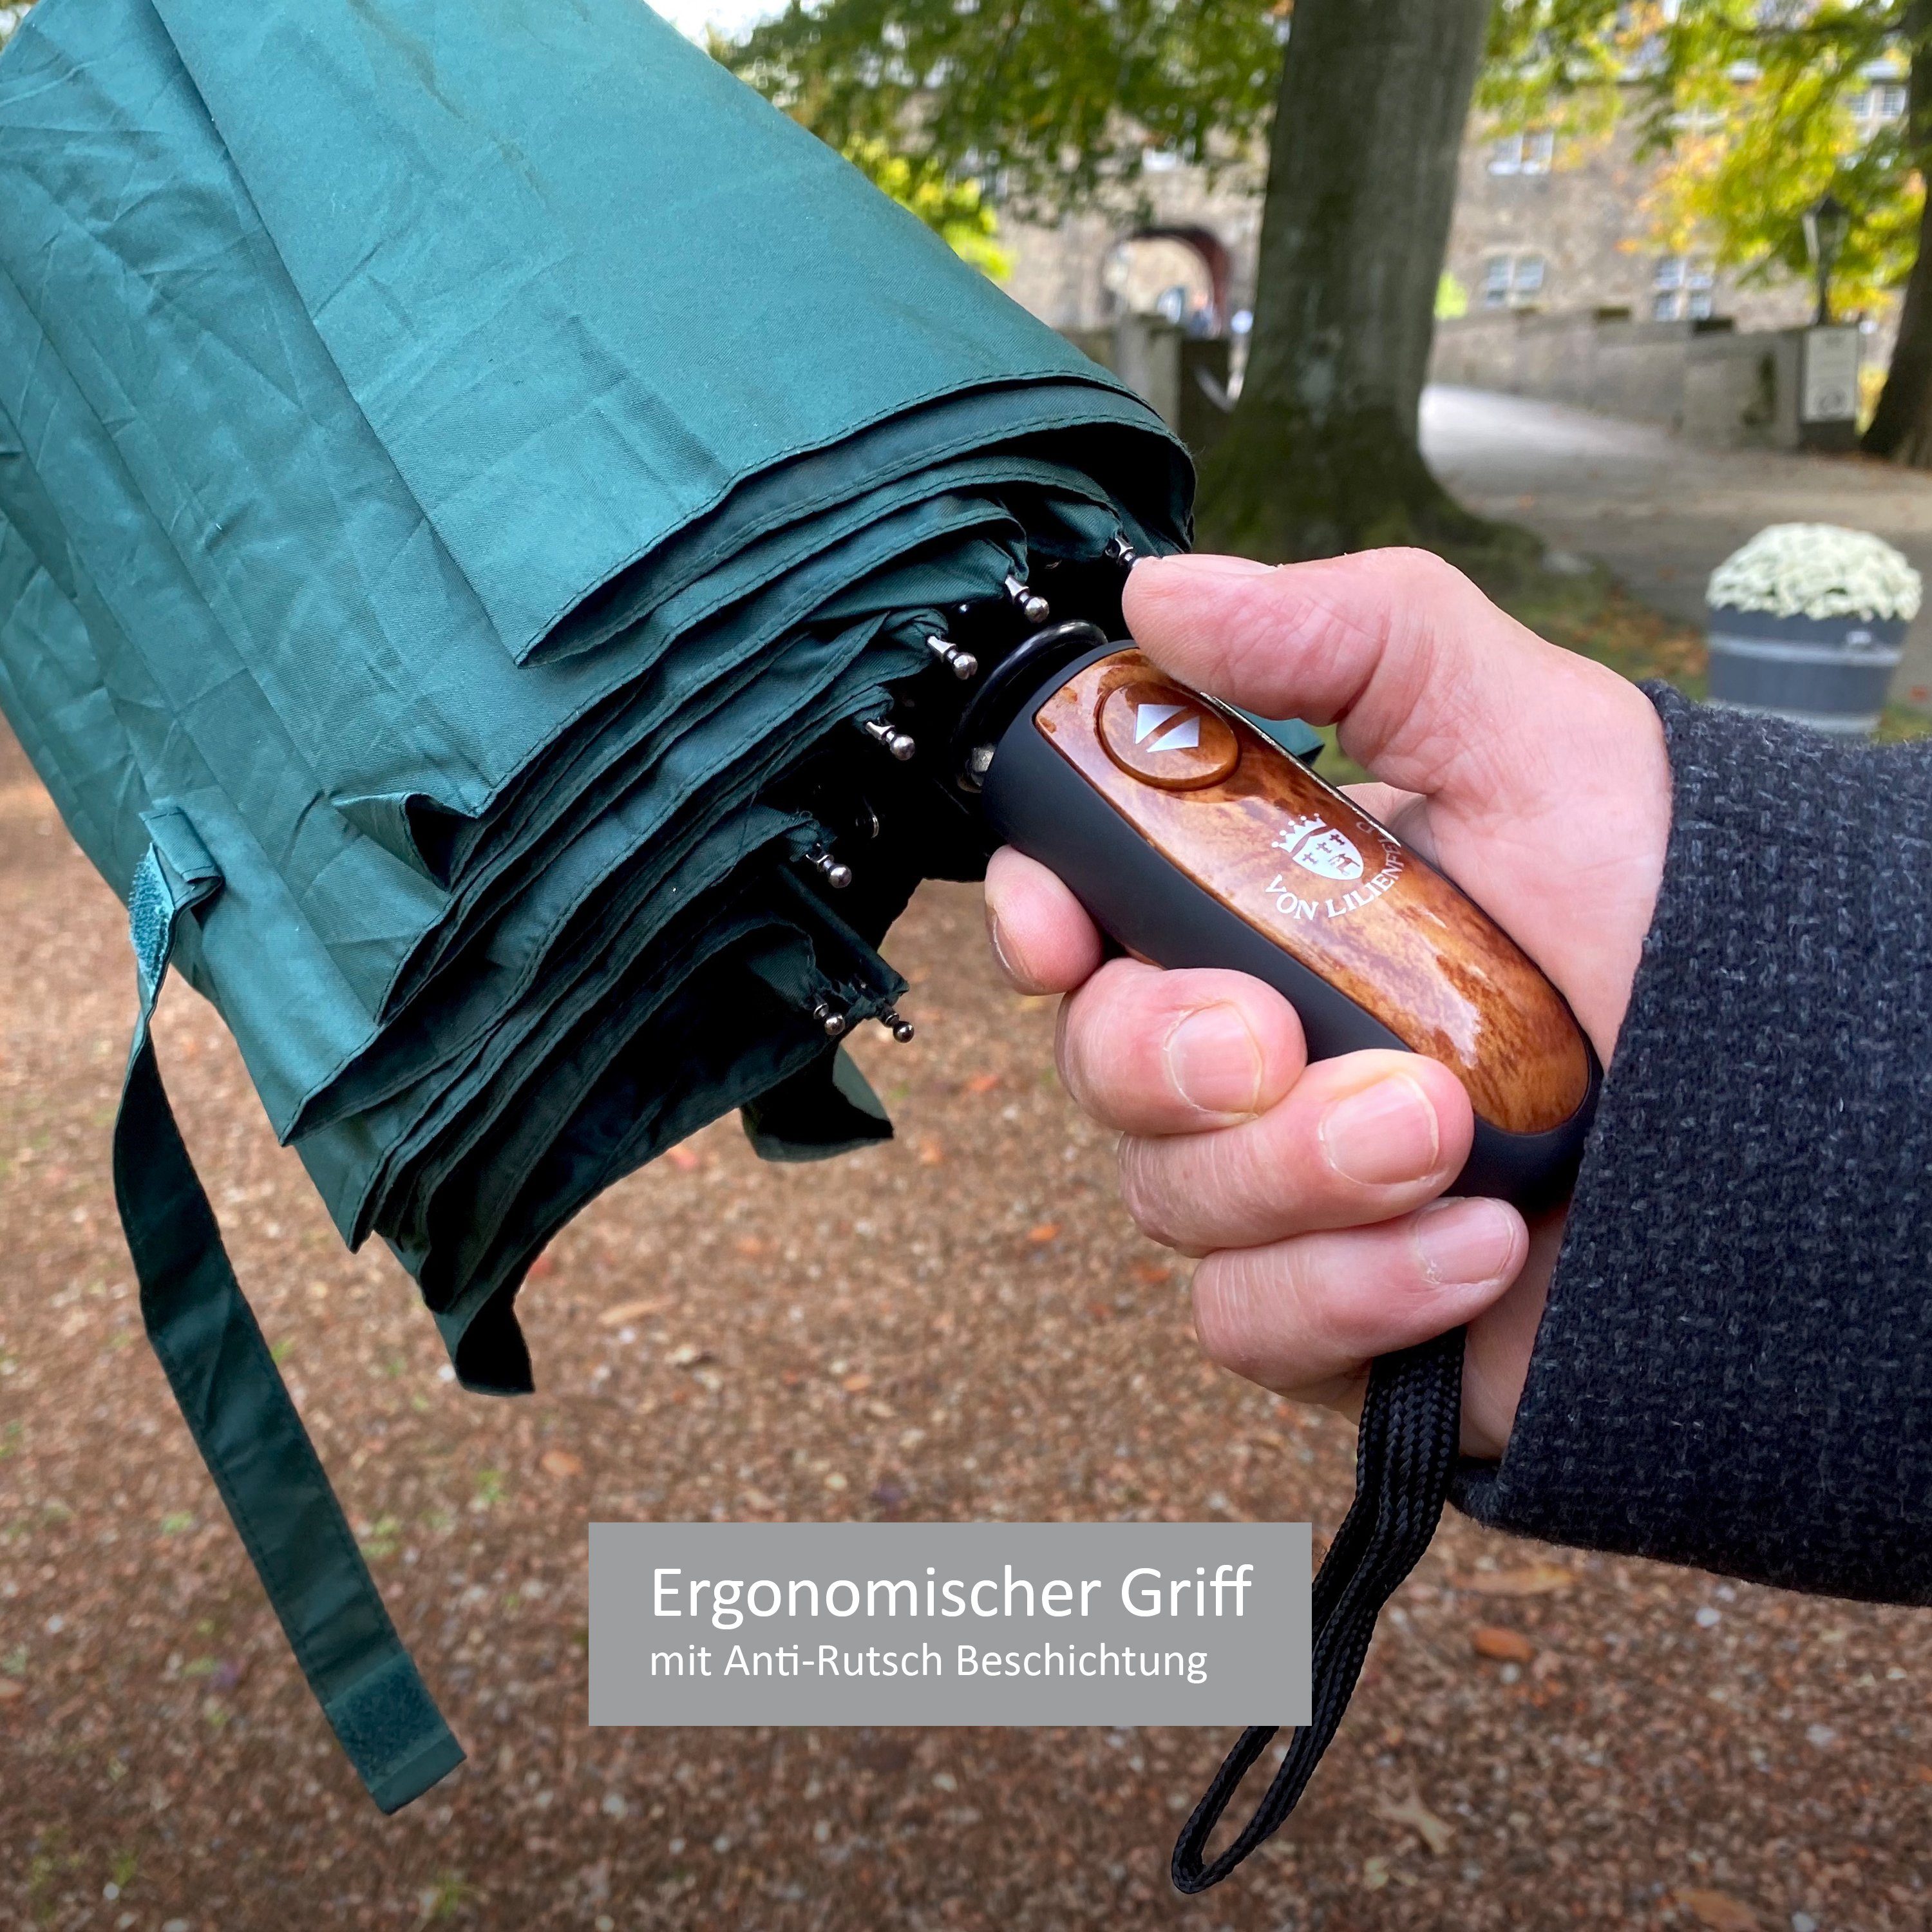 von Lilienfeld Taschenregenschirm Schirm schwarz schnelltrocknend Clark extrem Auf-Zu-Automatik wasserabweisend, mit Reise-Etu Teflonbeschichtung